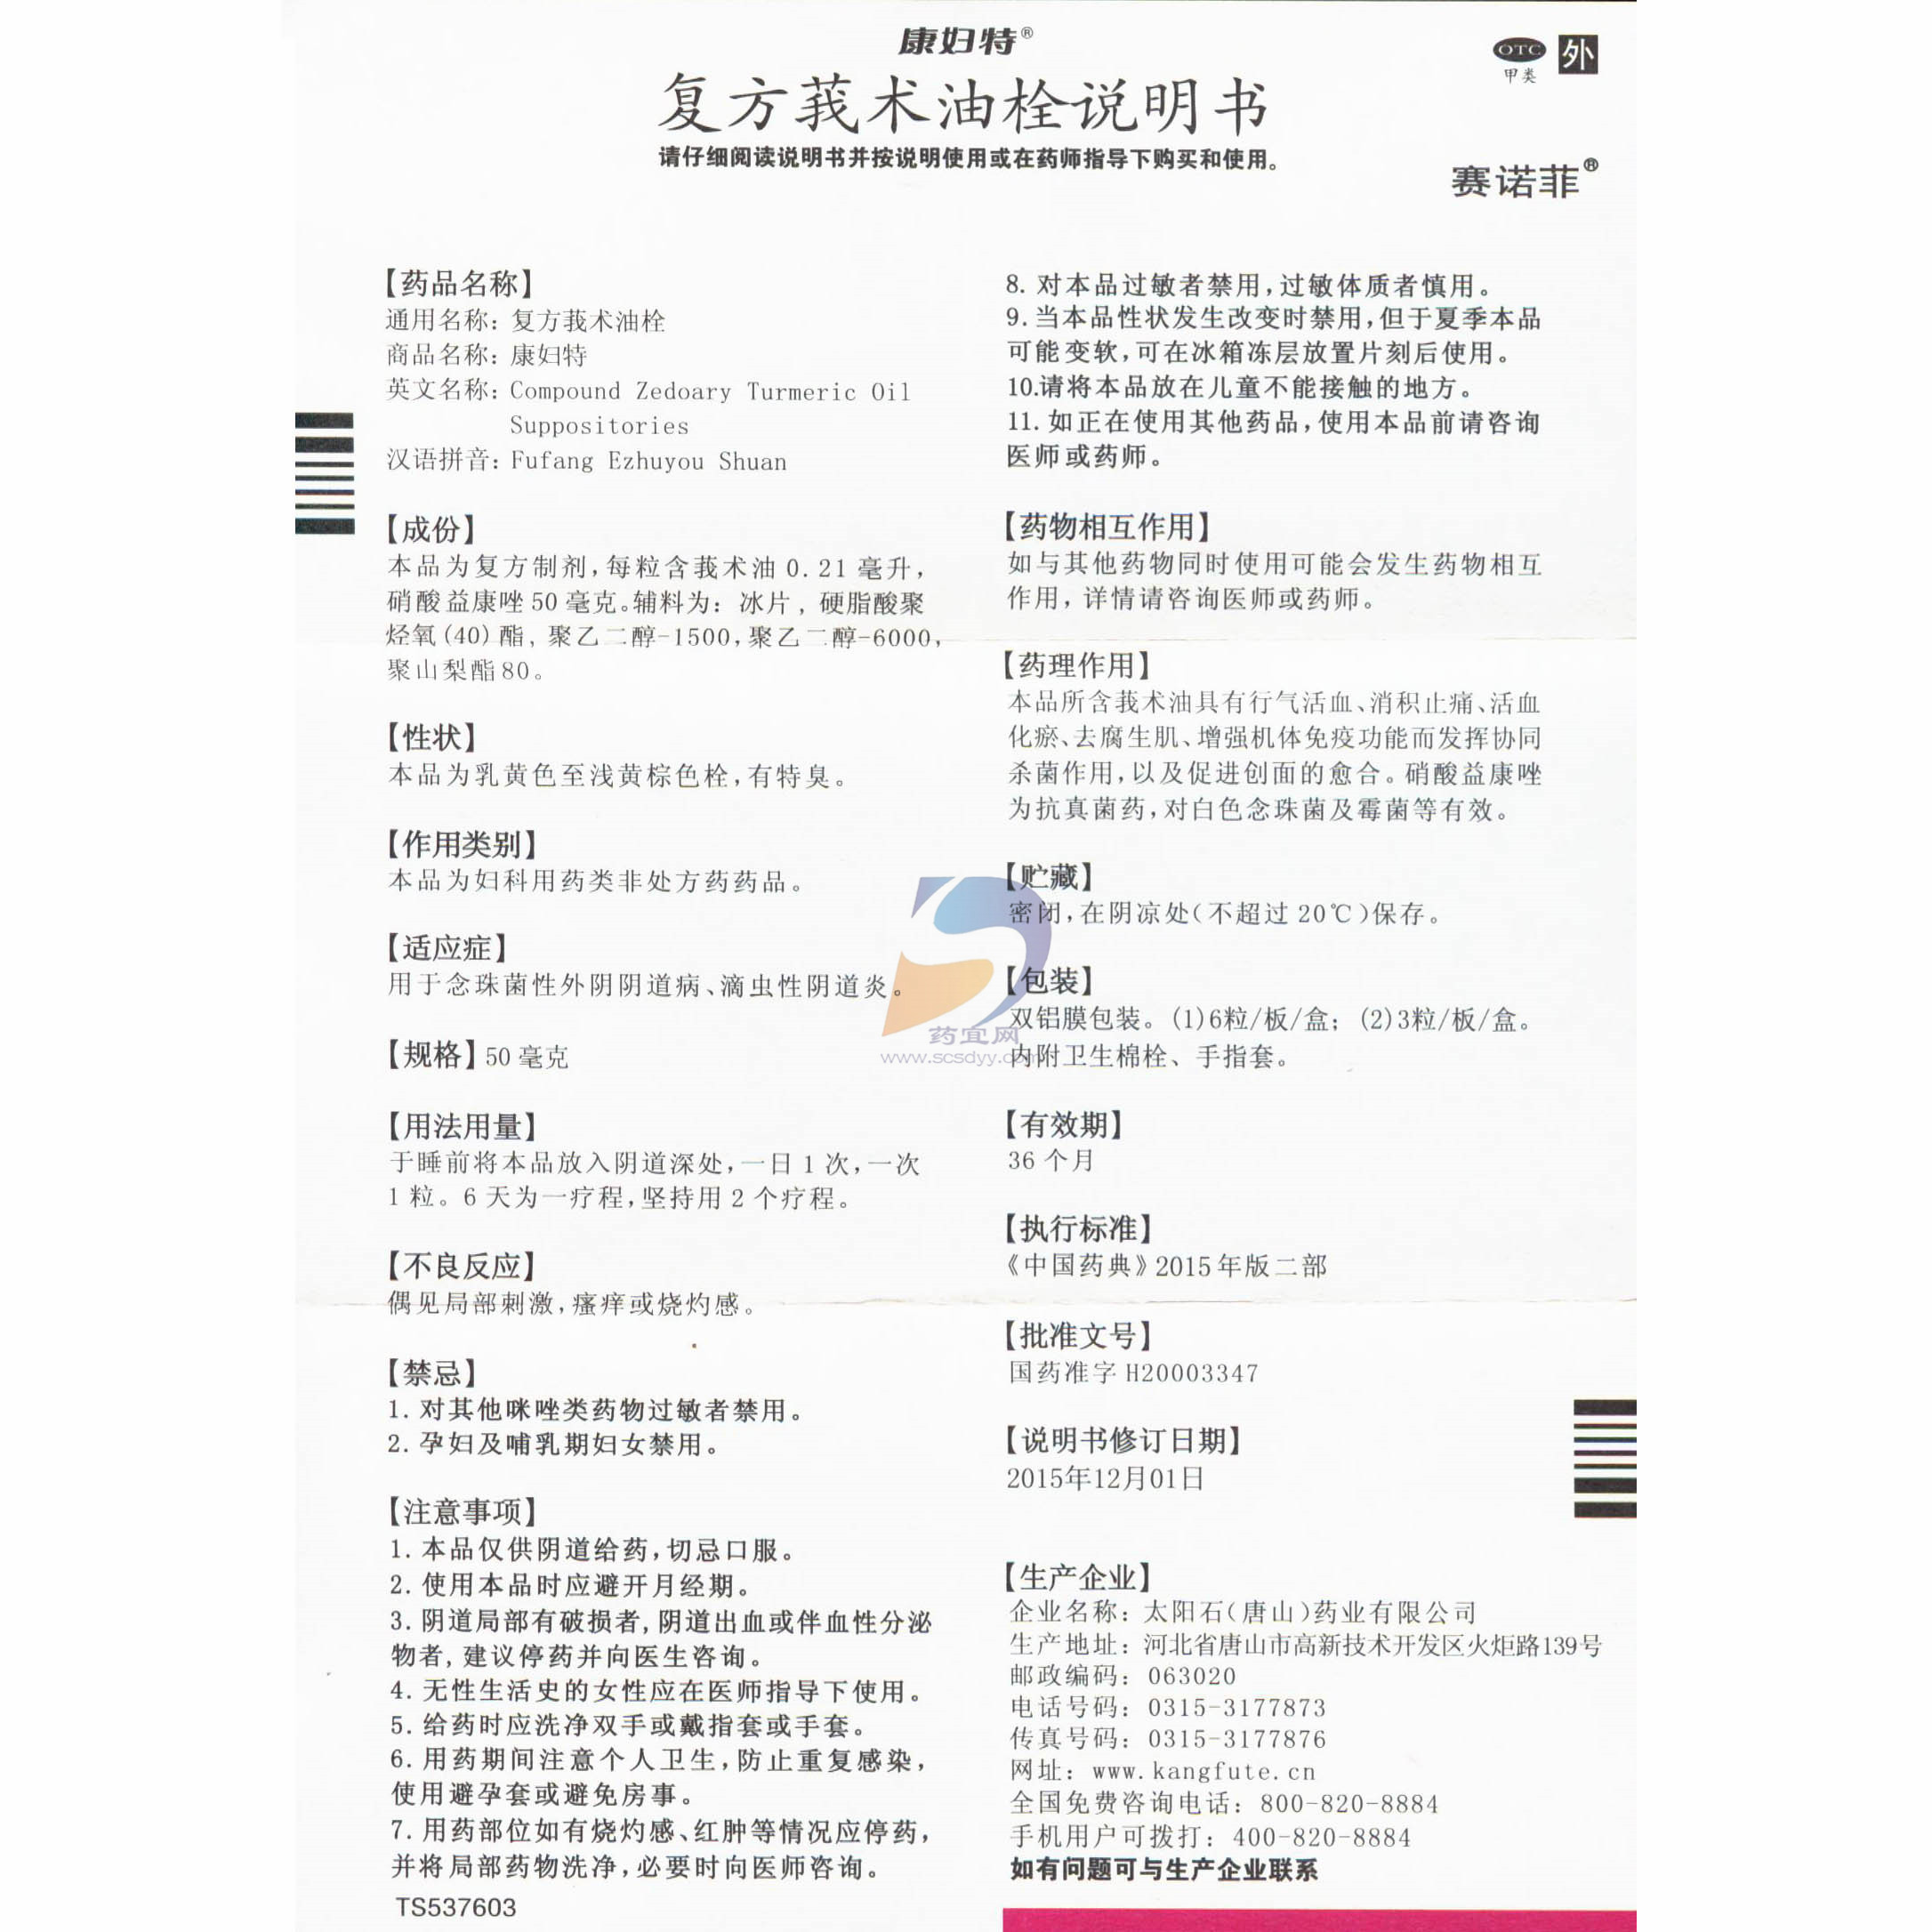 产品展示 - 陕西润华包装科技股份有限公司 - Shaanxi Runhua Packaging Technology Co.,Ltd